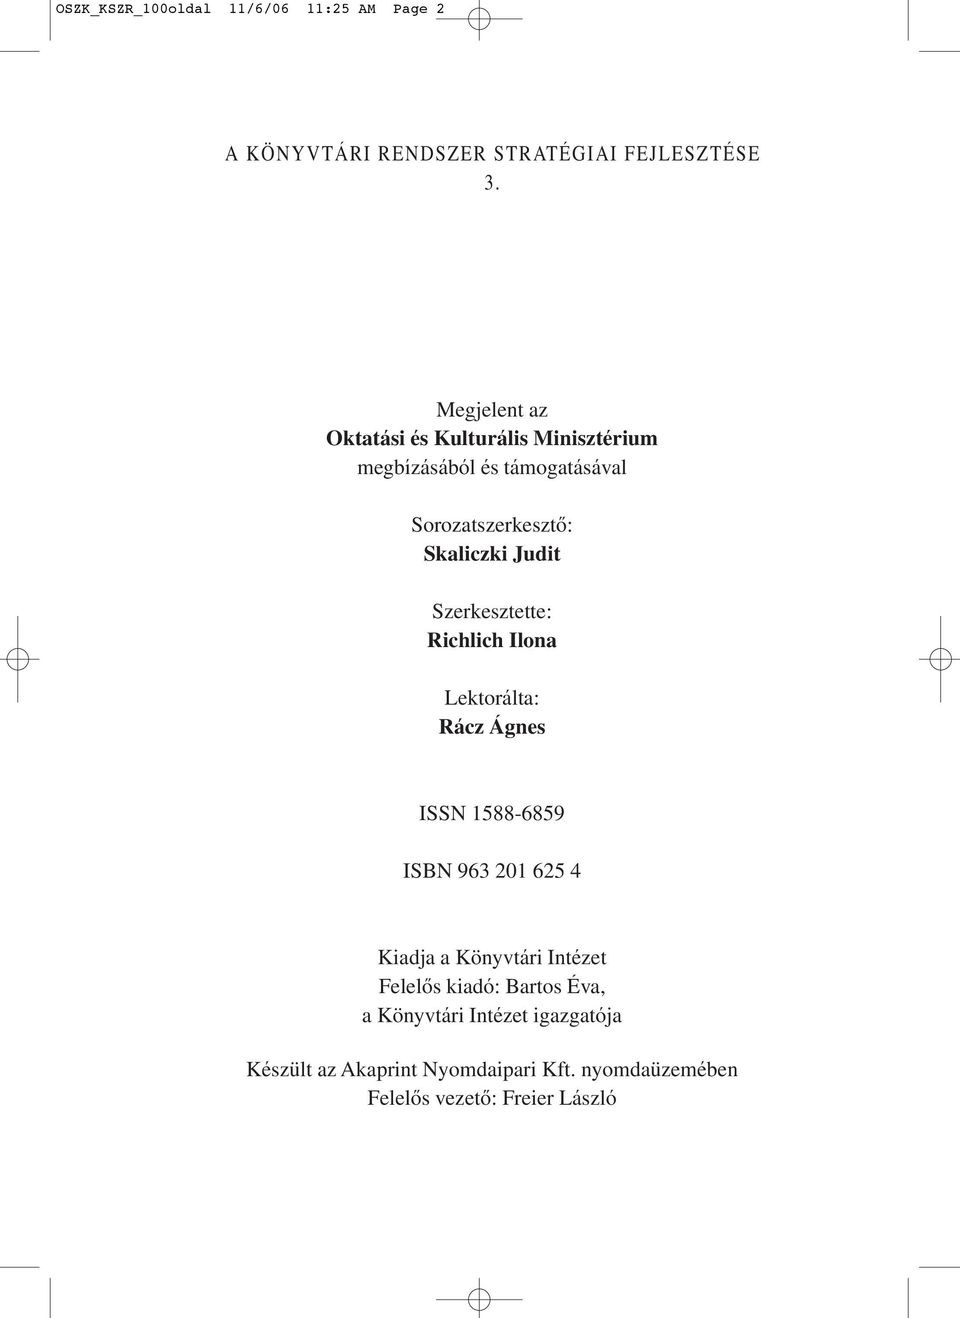 Szerkesztette: Richlich Ilona Lektorálta: Rácz Ágnes ISSN 1588-6859 ISBN 963 201 625 4 Kiadja a Könyvtári Intézet